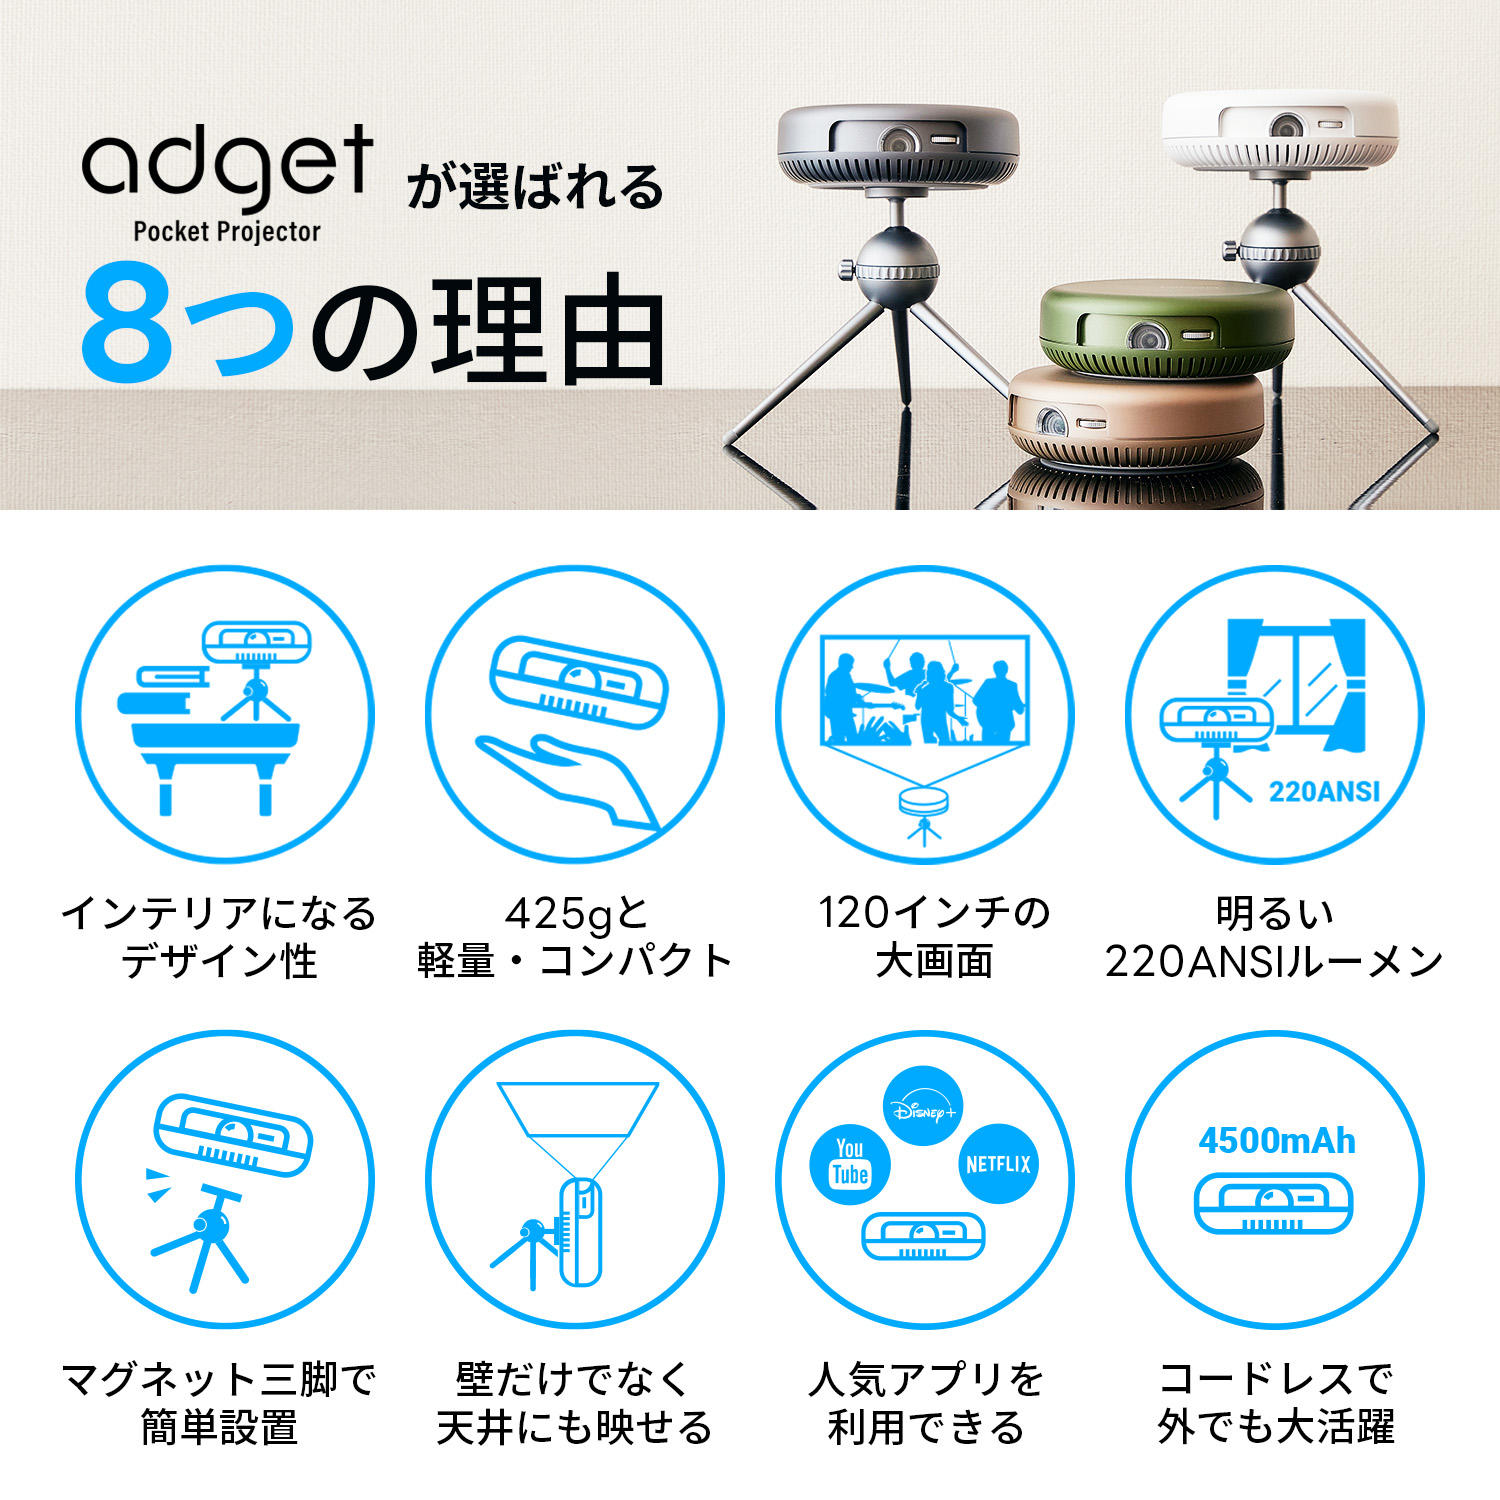 【数量限定特典あり】Adget Pocket Projector (アジェット ポケットプロジェクター) モスグリーン 